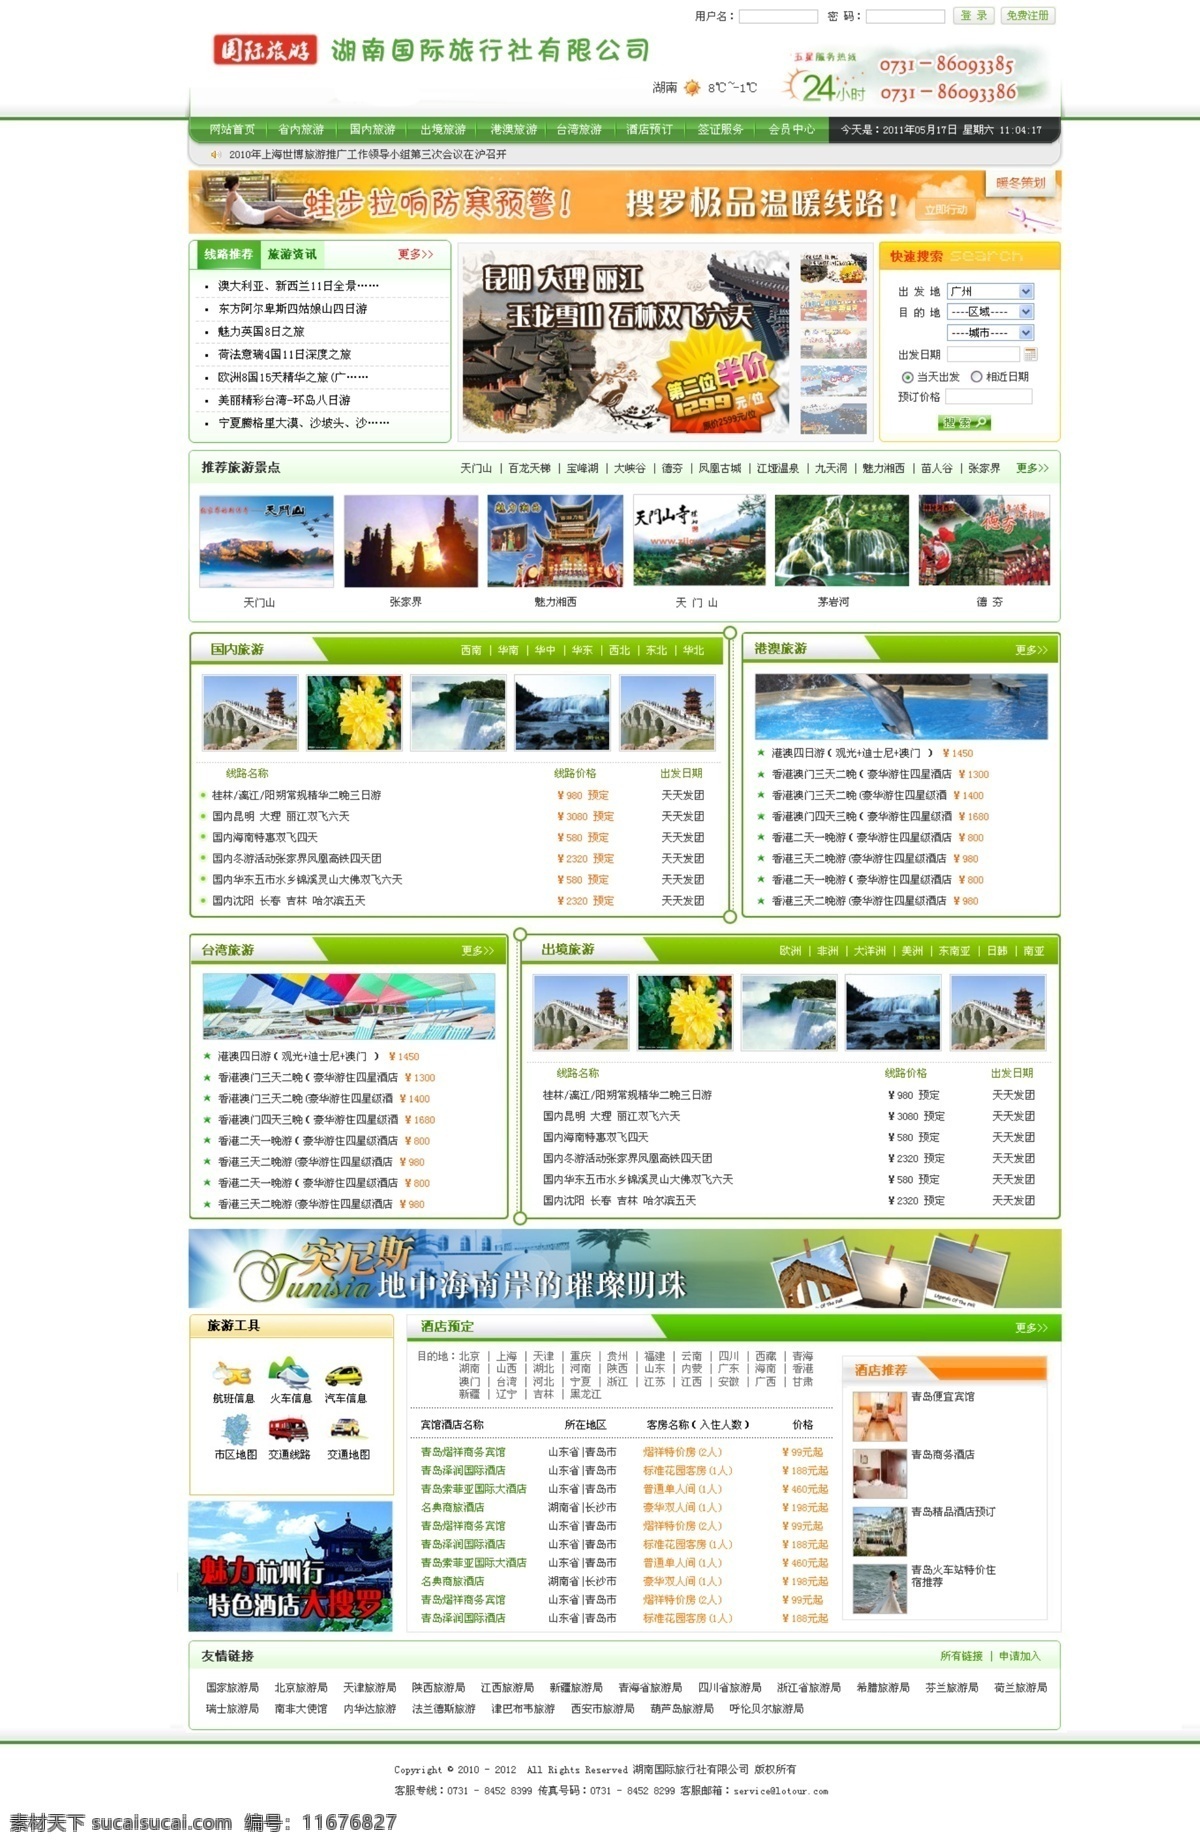 旅游 网站设计 模板 绿色网站模板 旅游景点 酒店推荐 中文模版 网页模板 源文件